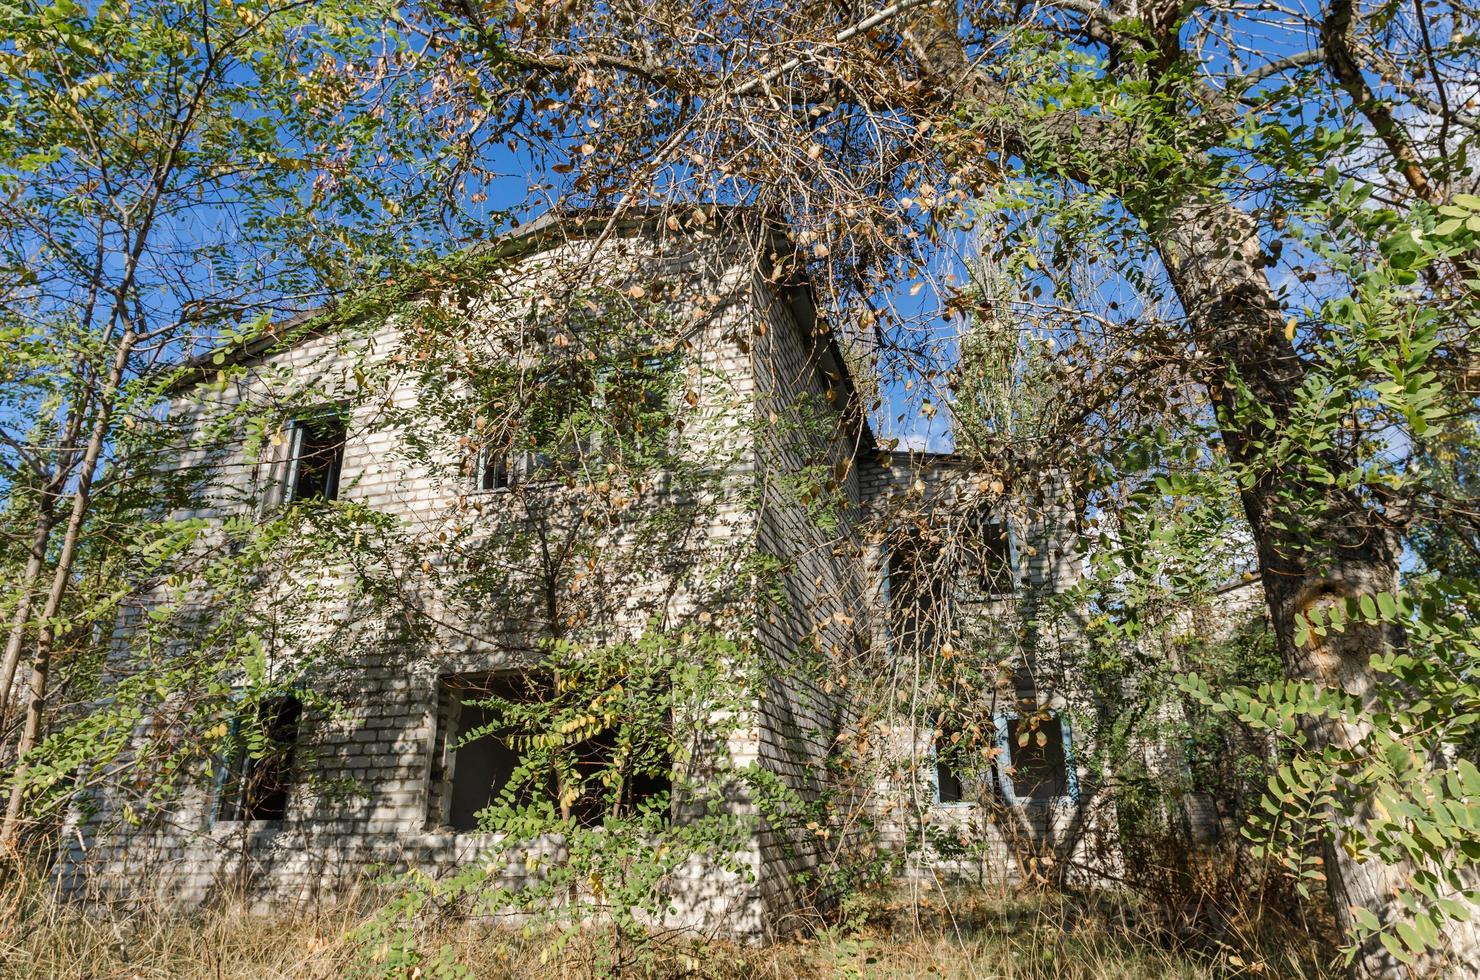 Antigua casa de pueblo abandonada en Ucrania foto